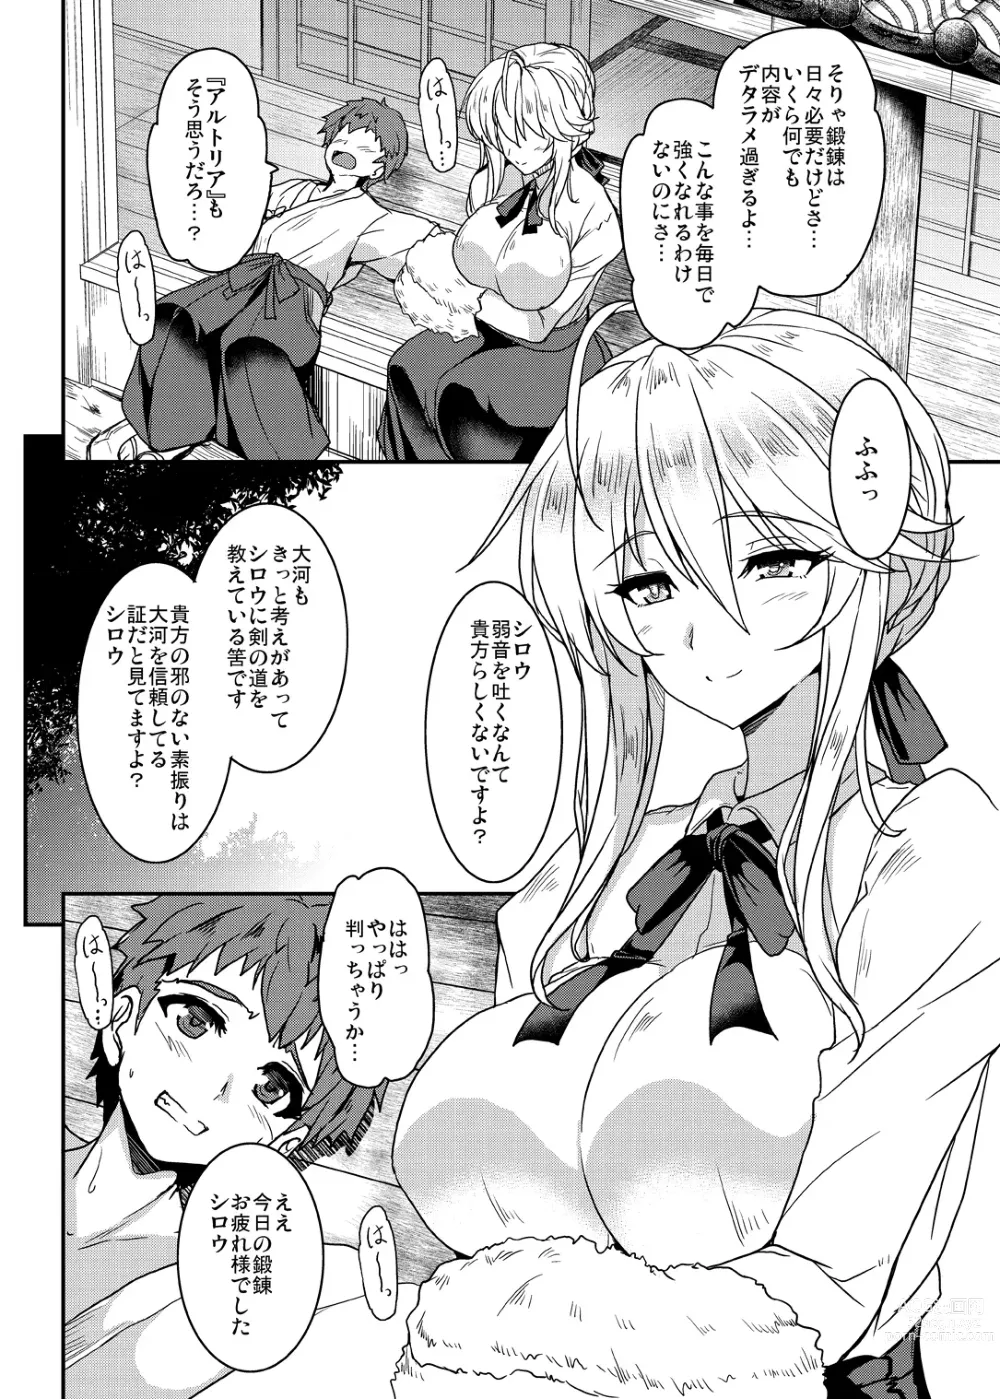 Page 8 of doujinshi Tonari no Chichiou-sama Memories Vol. 1